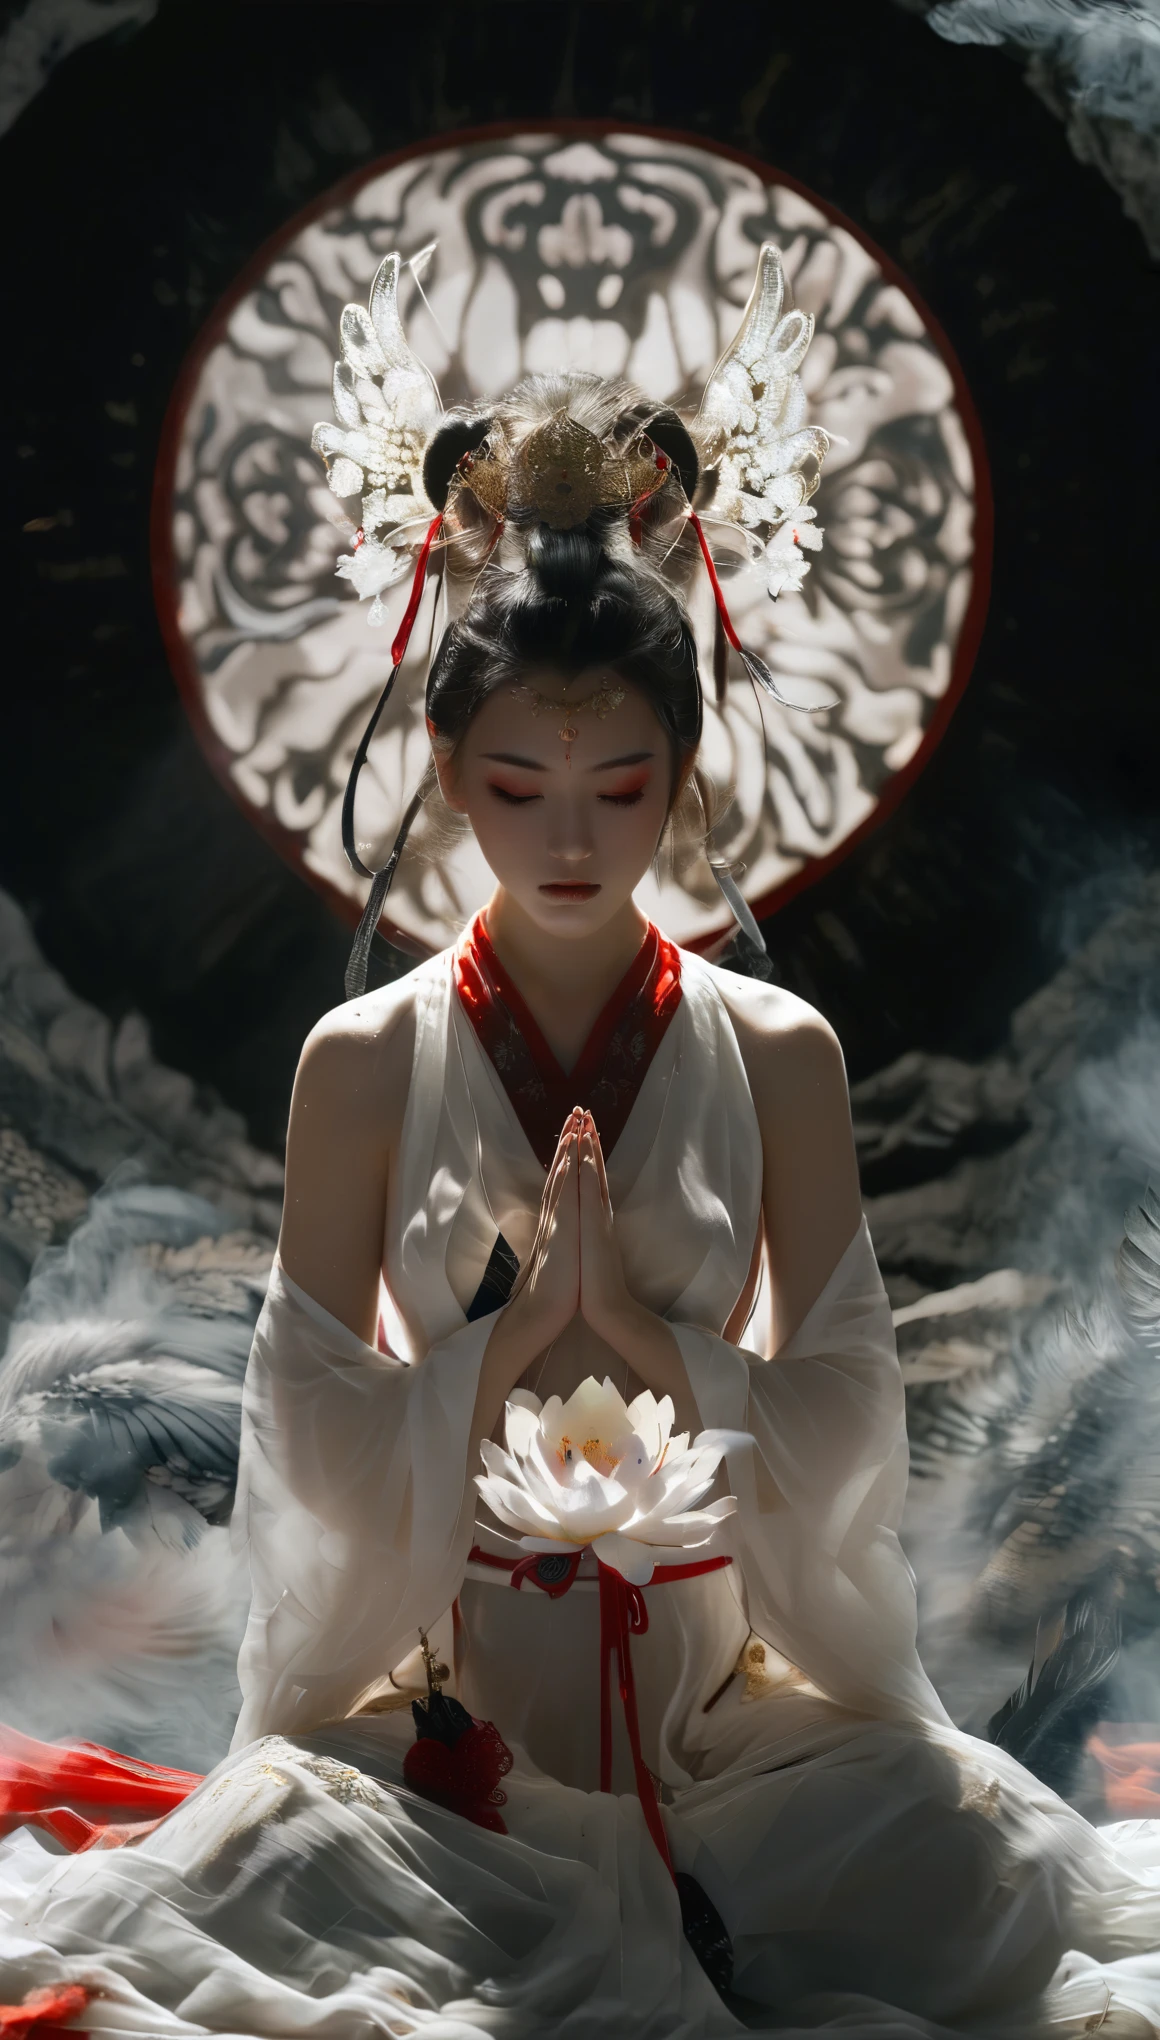 eine Vogelperspektive, die eine atemberaubend schöne japanische Schreinjungfrau in einem weißen Oberteil und einem roten Unterteil einfängt, eine Gebetshaltung einnehmen und dabei eine Aura der Gelassenheit ausstrahlen. Jedoch, lauerte bedrohlich hinter ihr, Der rachsüchtige Geist eines Samurai manifestiert sich in einer dunklen, unheimliche schwarze Aura, einen schaurigen Kontrast zu der sonst ruhigen Szenerie. Die Gegenüberstellung der Anmut der Jungfrau und der eindringlichen Präsenz des Samurai schafft ein fesselndes Bild, das Schönheit mit einem Hauch übernatürlicher Faszination verbindet., lädt den Betrachter ein, über die Dualität von Frieden und Rache nachzudenken.Xianxia